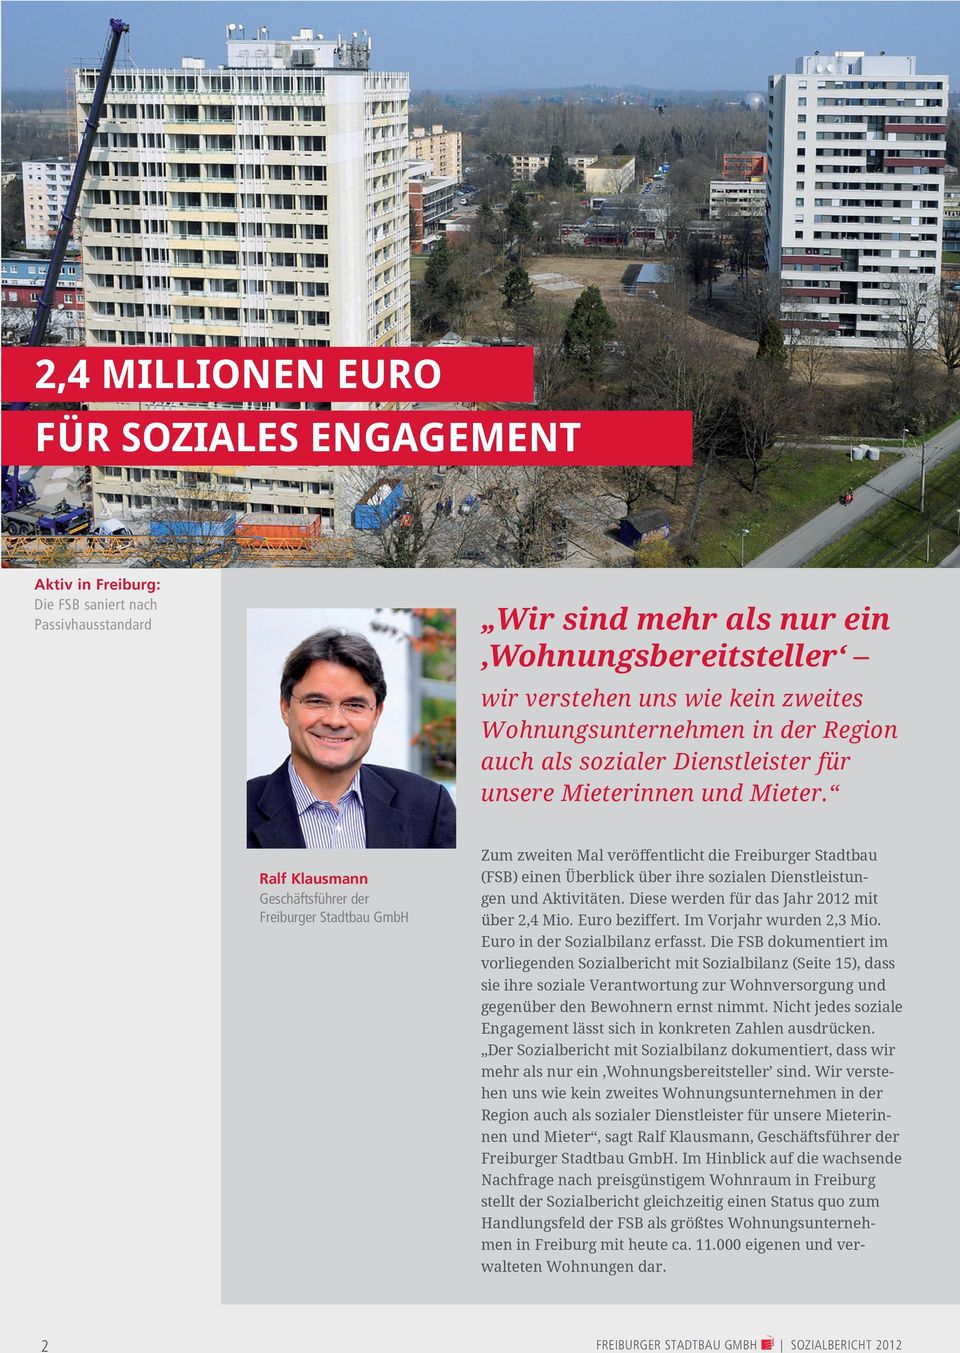 Ralf Klausmann Geschäftsführer der Freiburger Stadtbau GmbH Zum zweiten Mal veröffentlicht die Freiburger Stadtbau (FSB) einen Überblick über ihre sozialen Dienstleistungen und Aktivitäten.